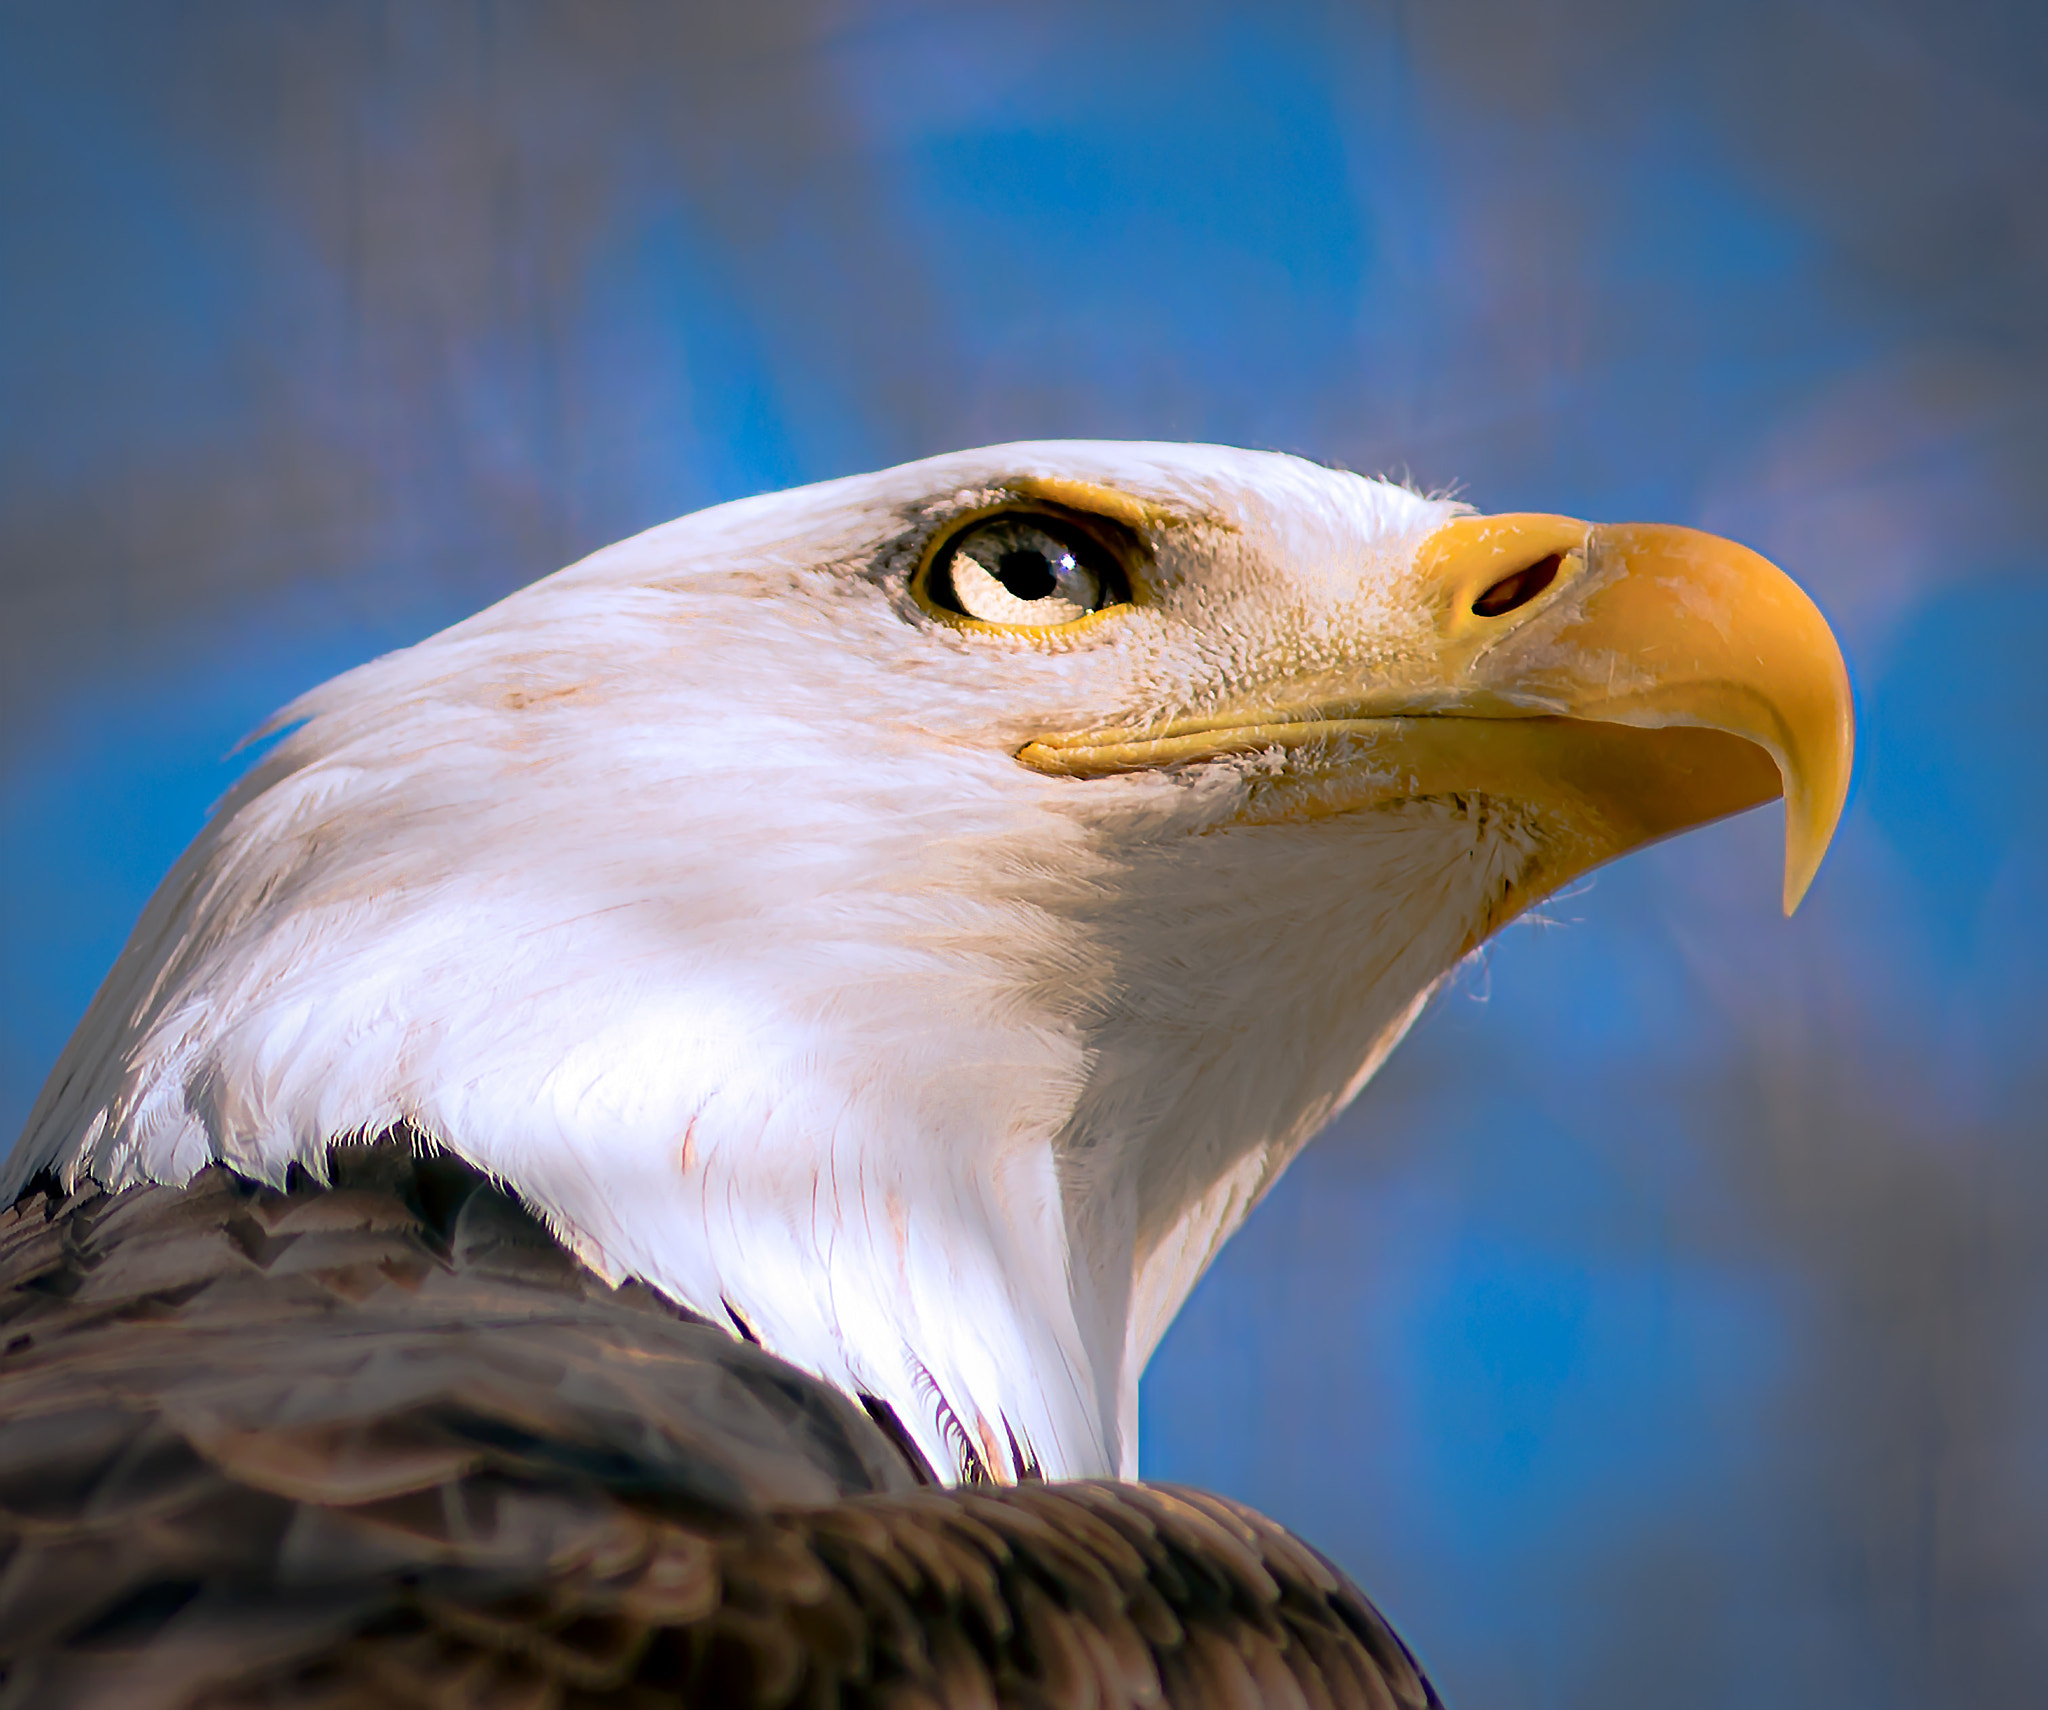 AF Nikkor 180mm f/2.8 IF-ED sample photo. Proud eagle photography